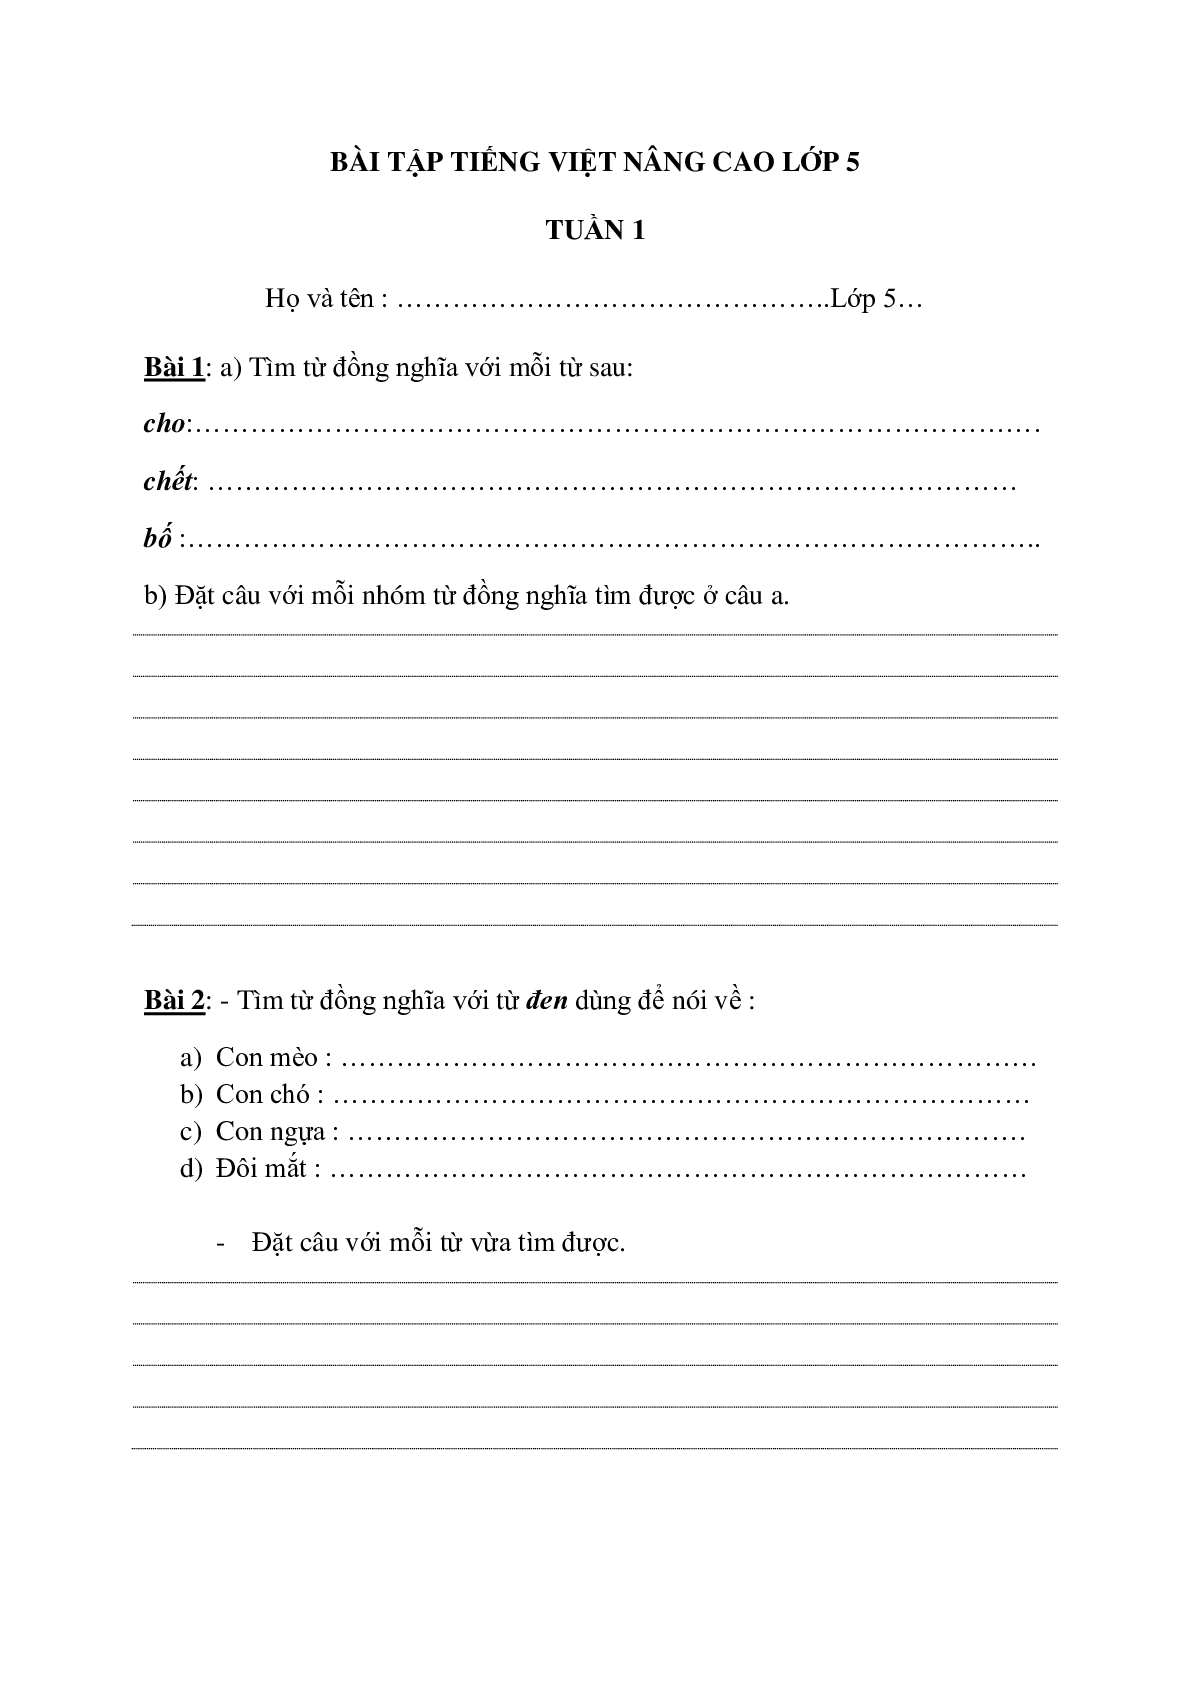 Bài tập nâng cao môn Tiếng Việt lớp 5 (trang 1)